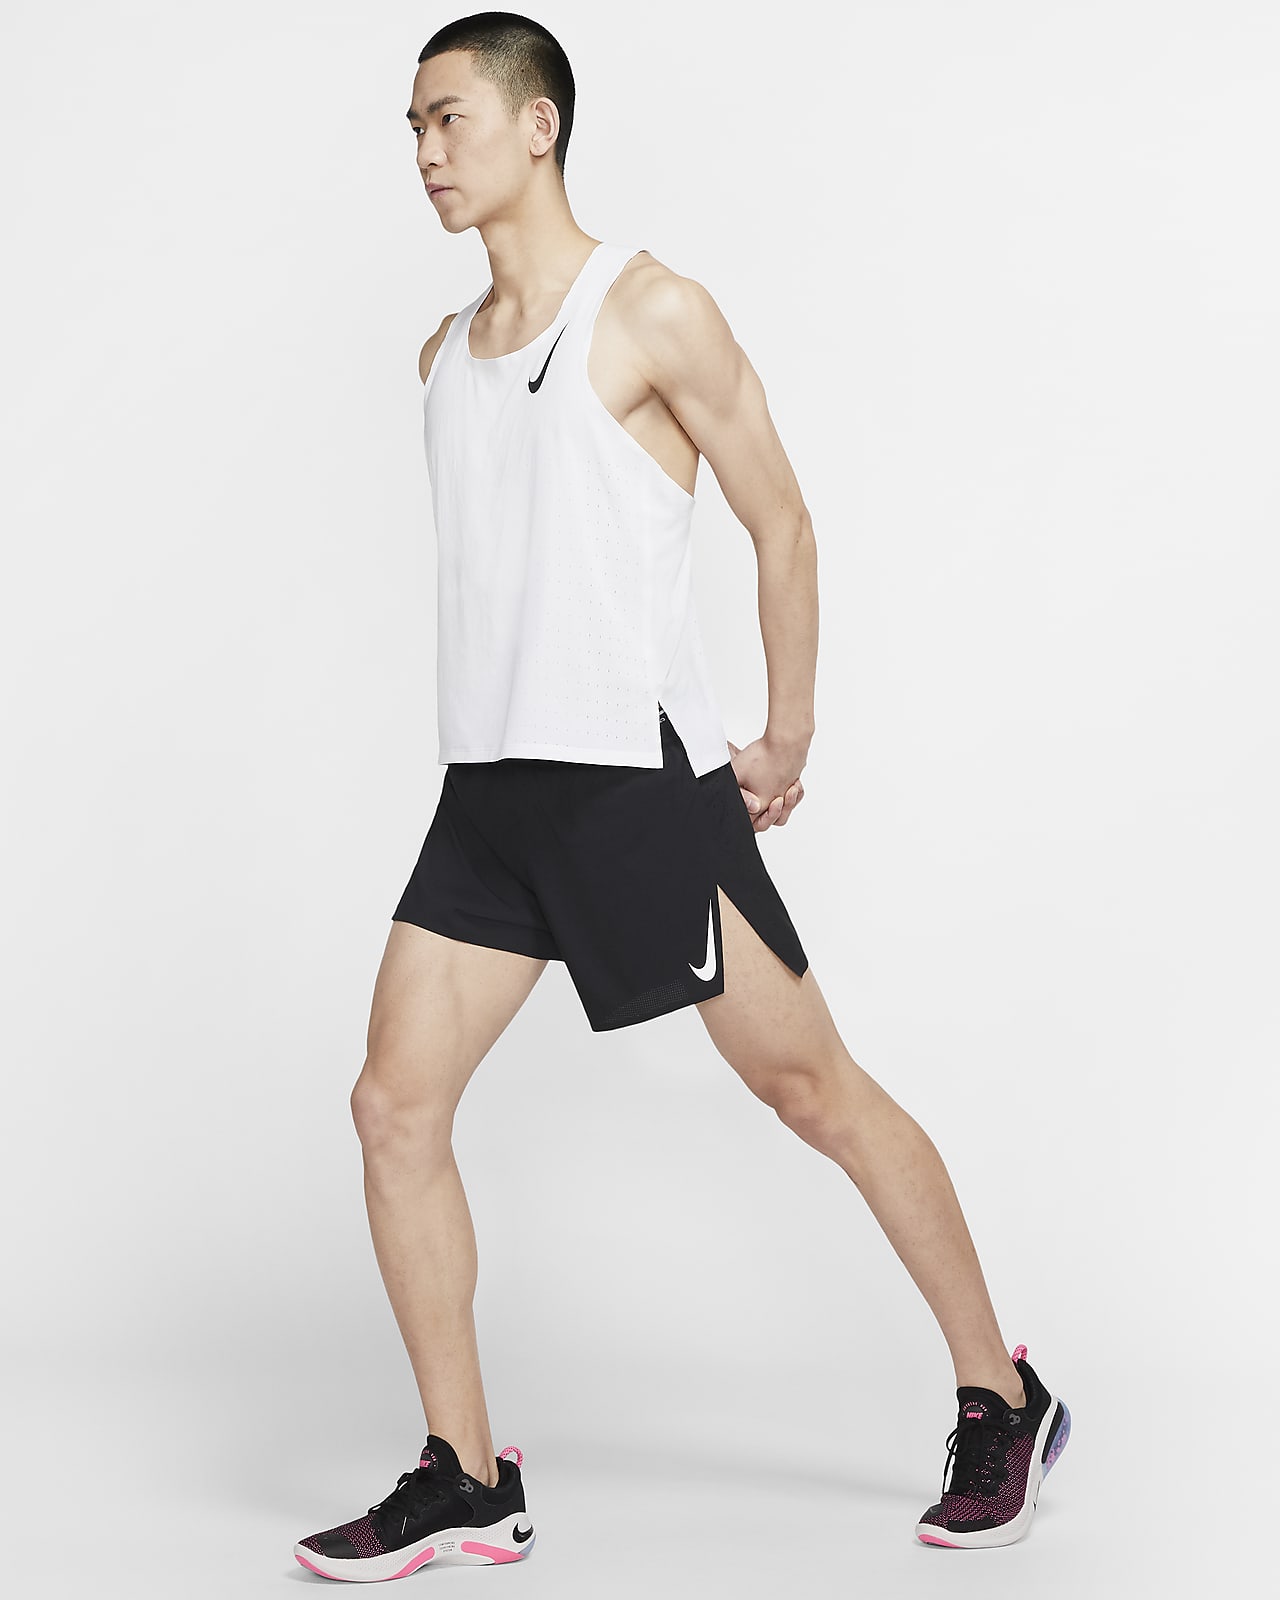 Nike Mens Aeroswift Run Singlet (Polar/White stripes) – The Happy